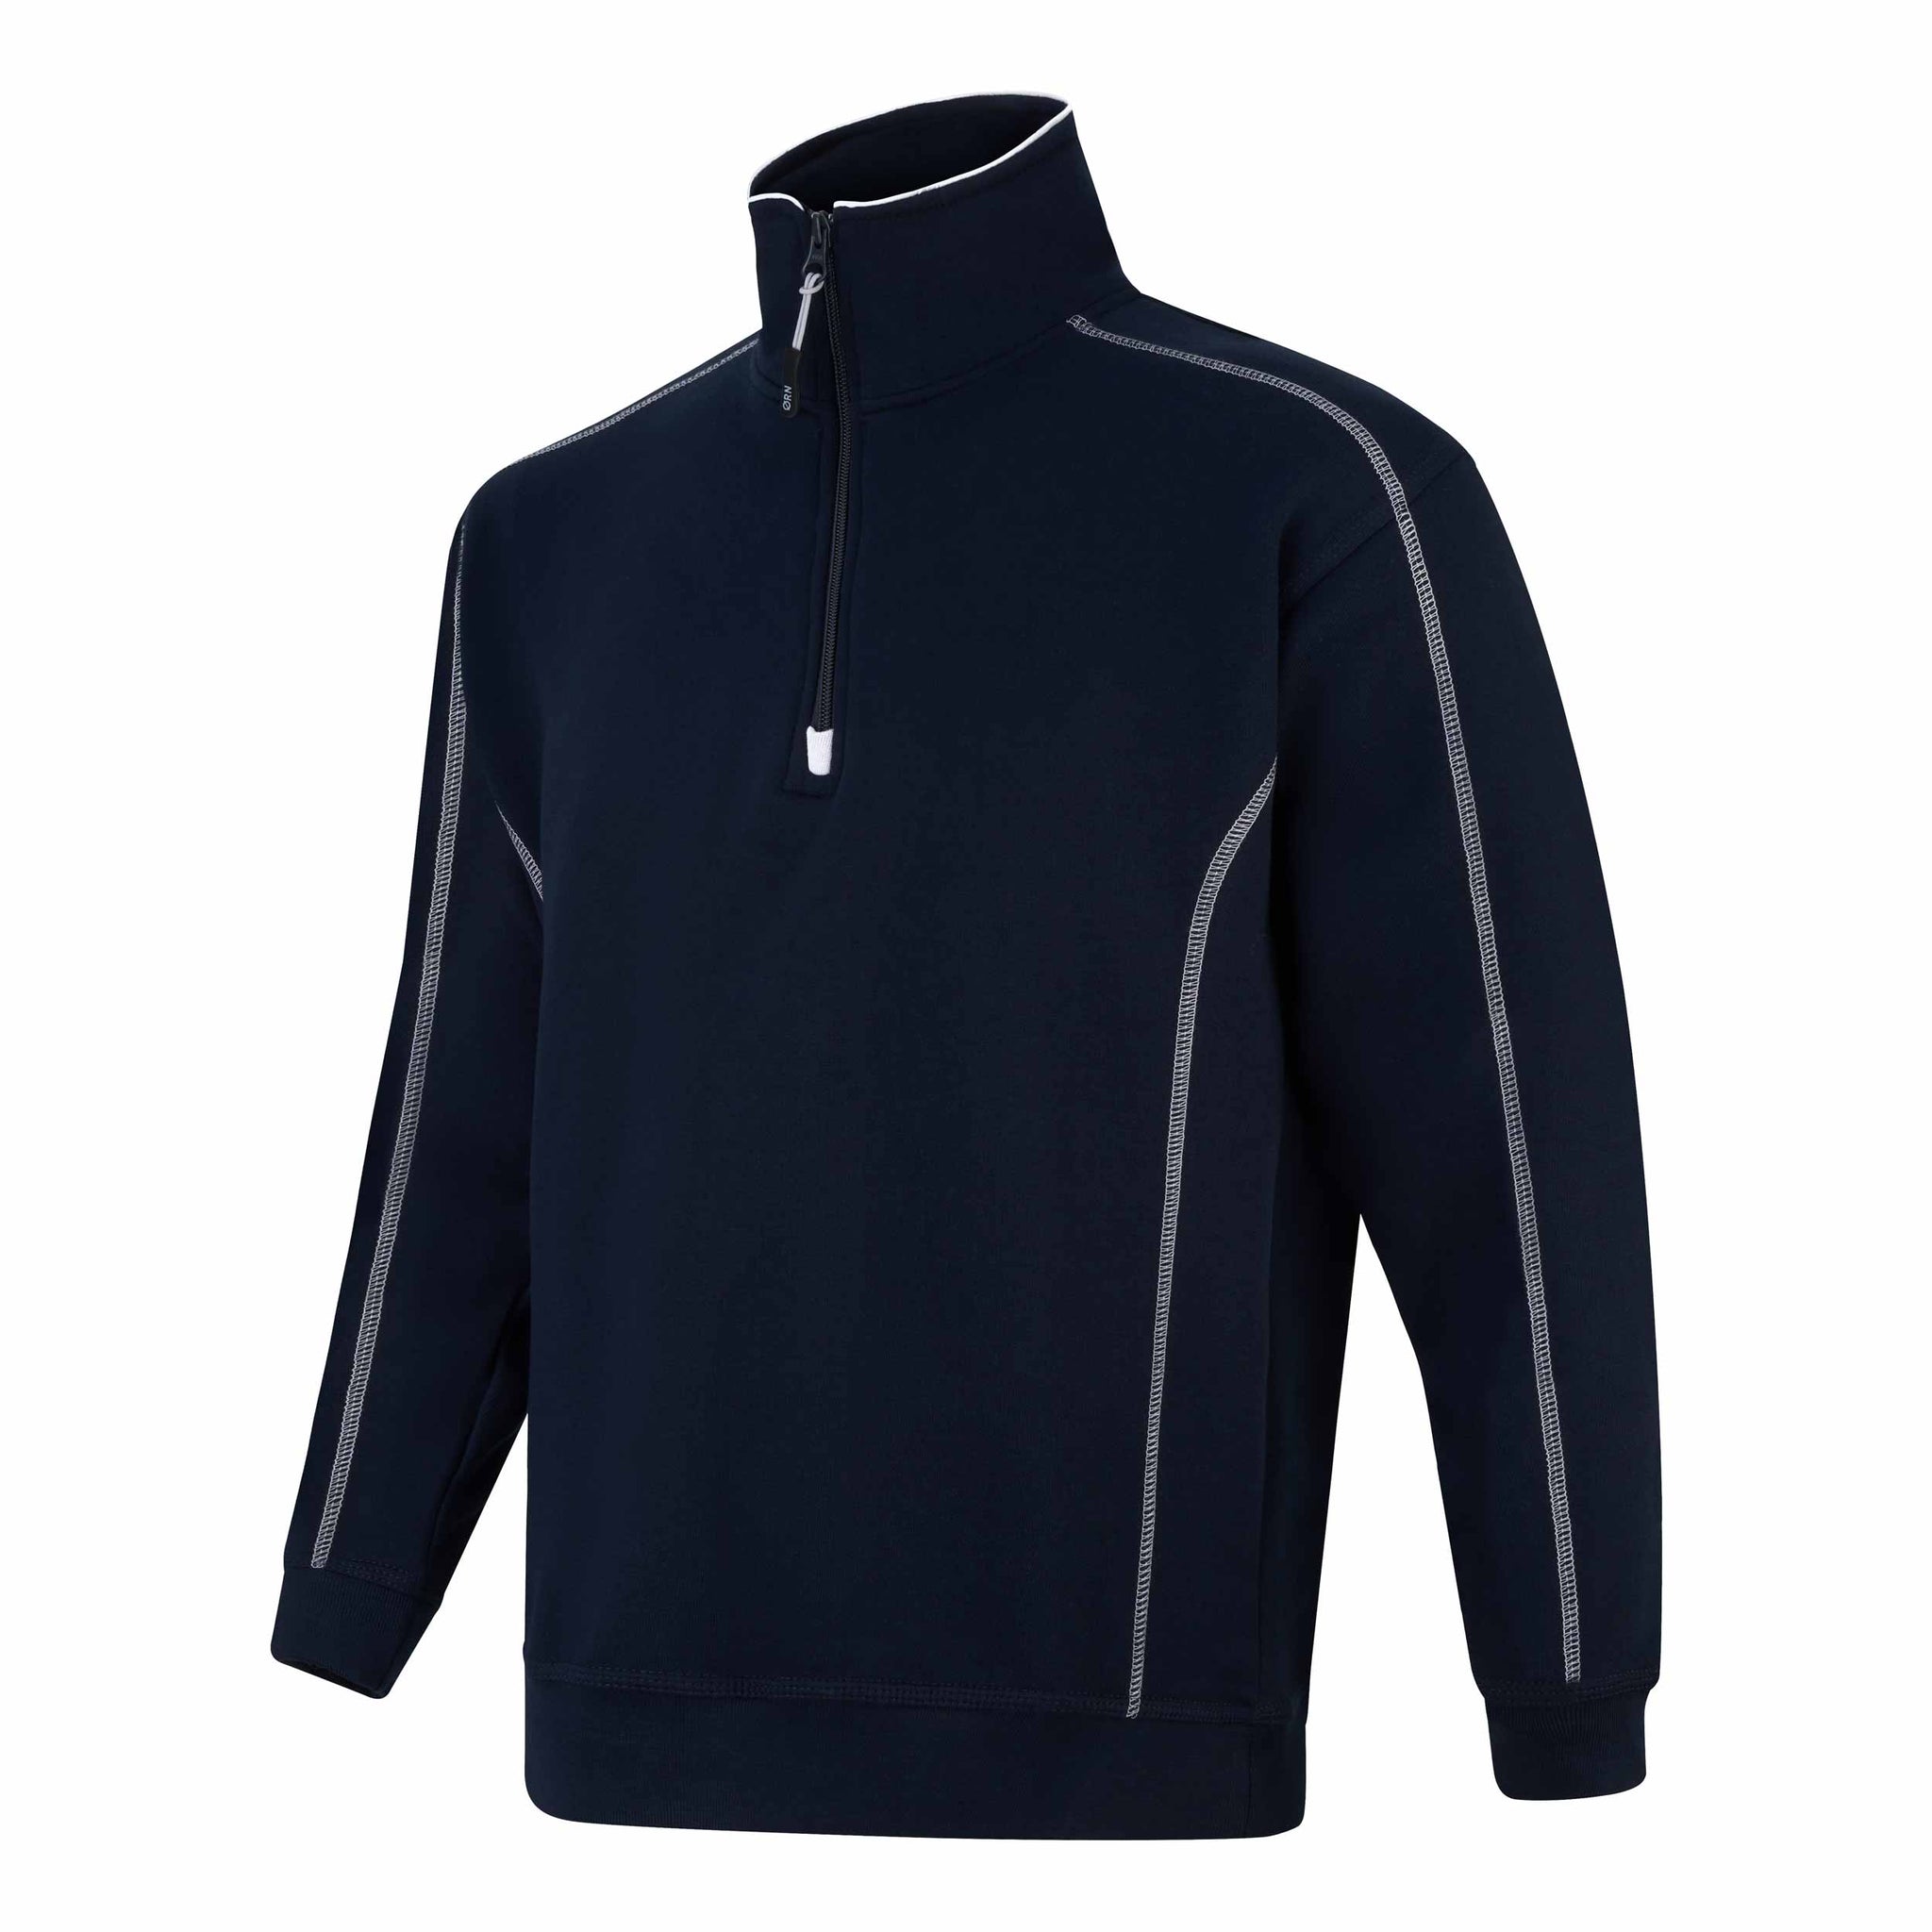 Quarter Zip Sweatshirt XS-5XL / 65% Polyester - 35% Baumwolle / 3 Farben / Crane